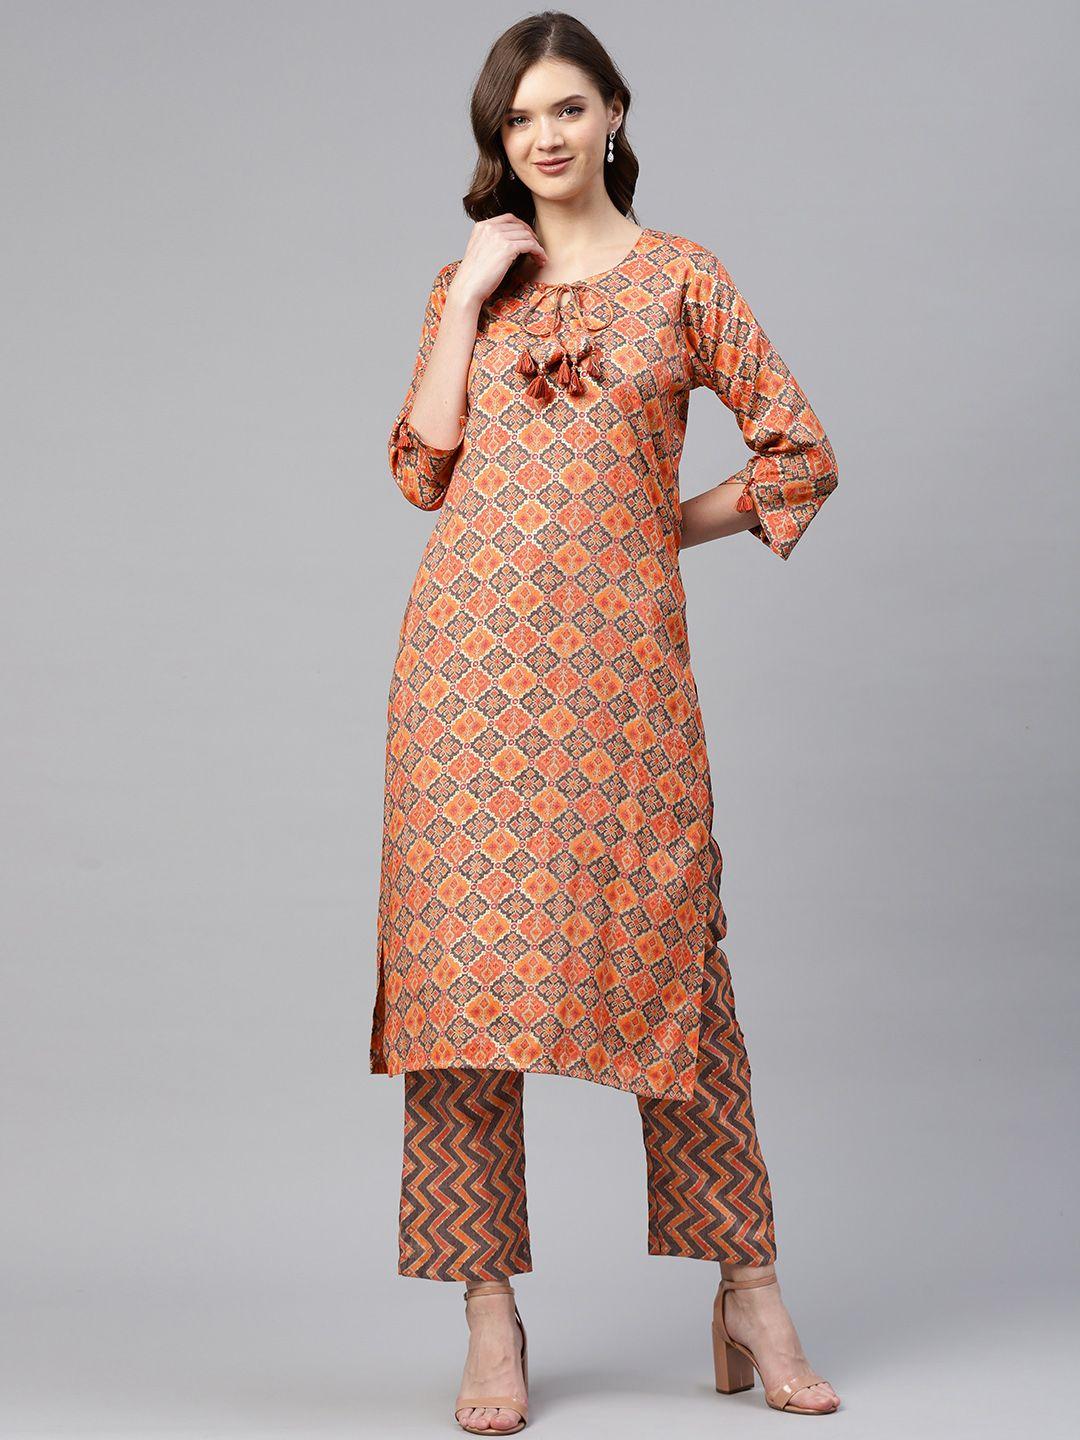 readiprint-fashions-women-orange-&-gold-ikat-woven-design-straight-kurta-with-palazzos